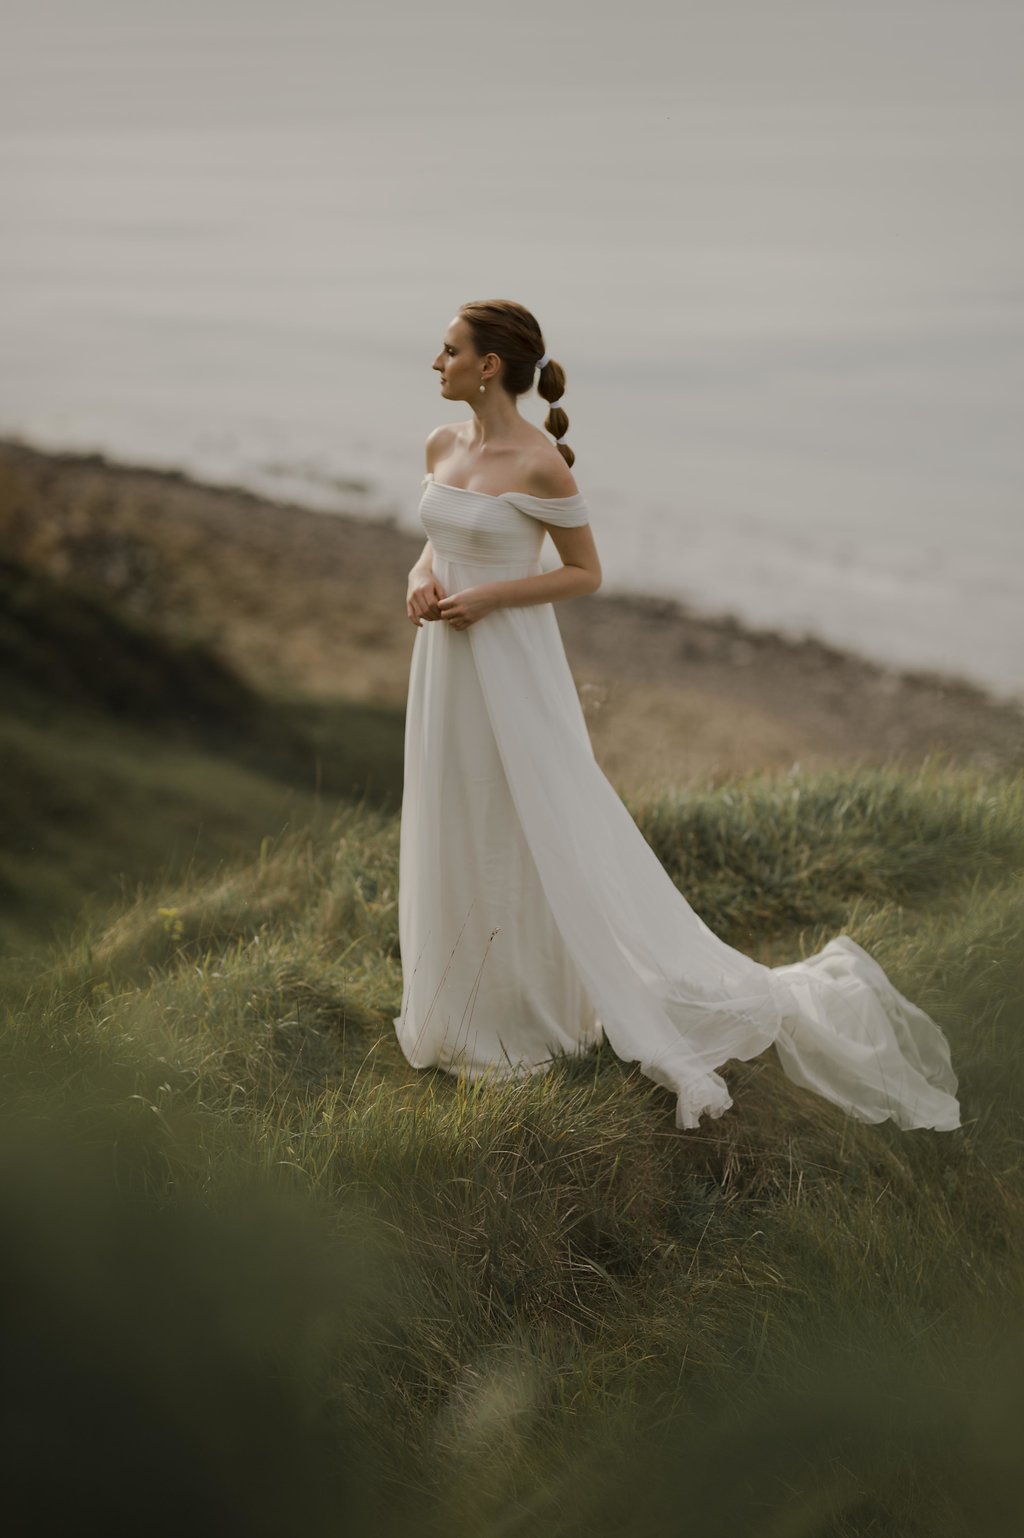 Regards d'horizon - le wedding magazine © Solveig et Ronan Photographes